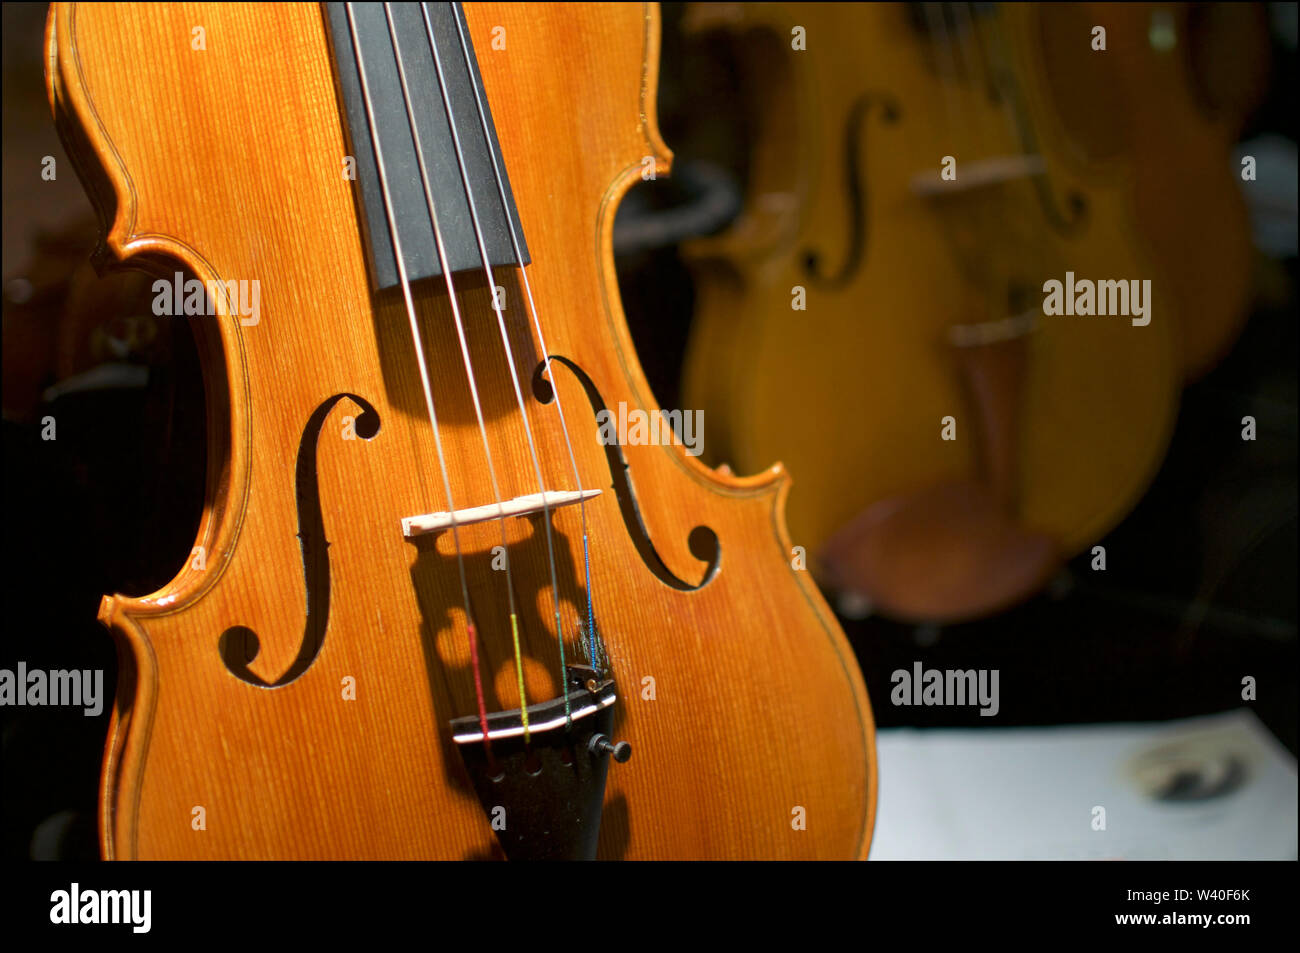 Switzerland Instruments Instrument Stockfotos und -bilder Kaufen - Alamy